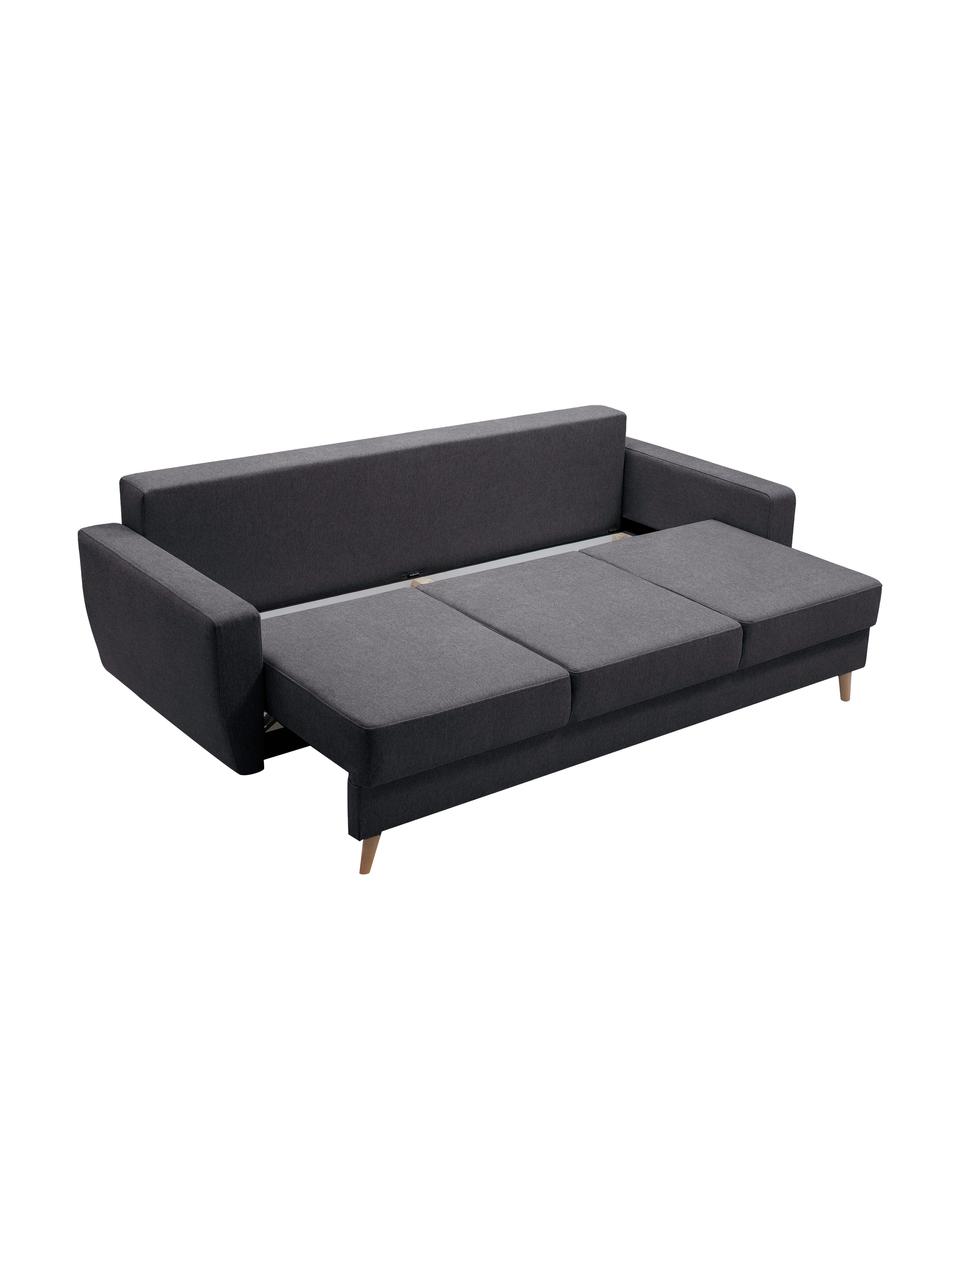 Sofa z funkcją spania i miejscem do przechowywania Bueno (3-osobowa), Tapicerka: 100% poliester, Antracytowy, S 231 x G 92 cm